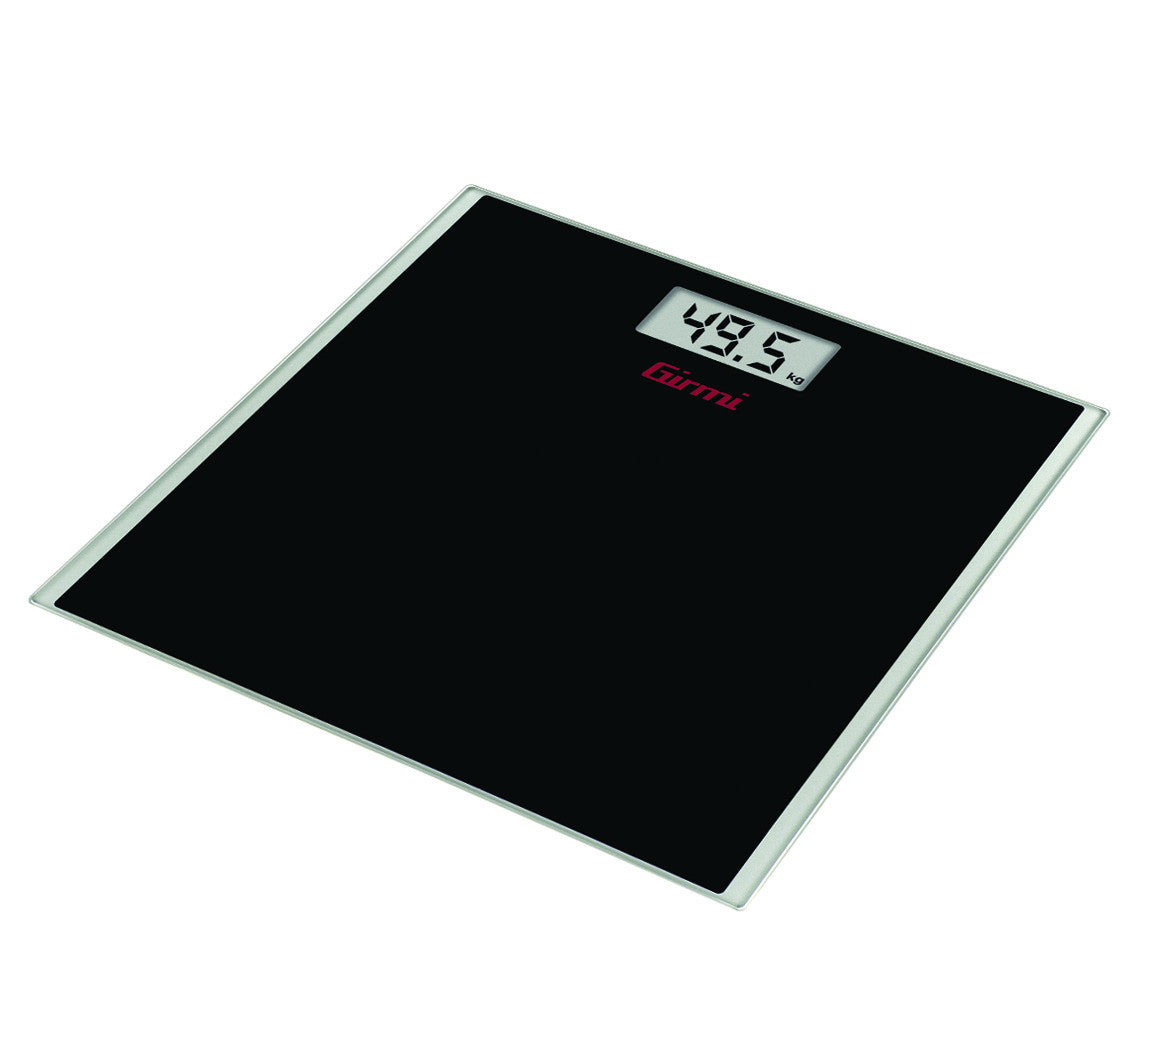 Bilancia pesapersone elettronica bp20 kg.150 vetro nero - vetro nero GIRMI